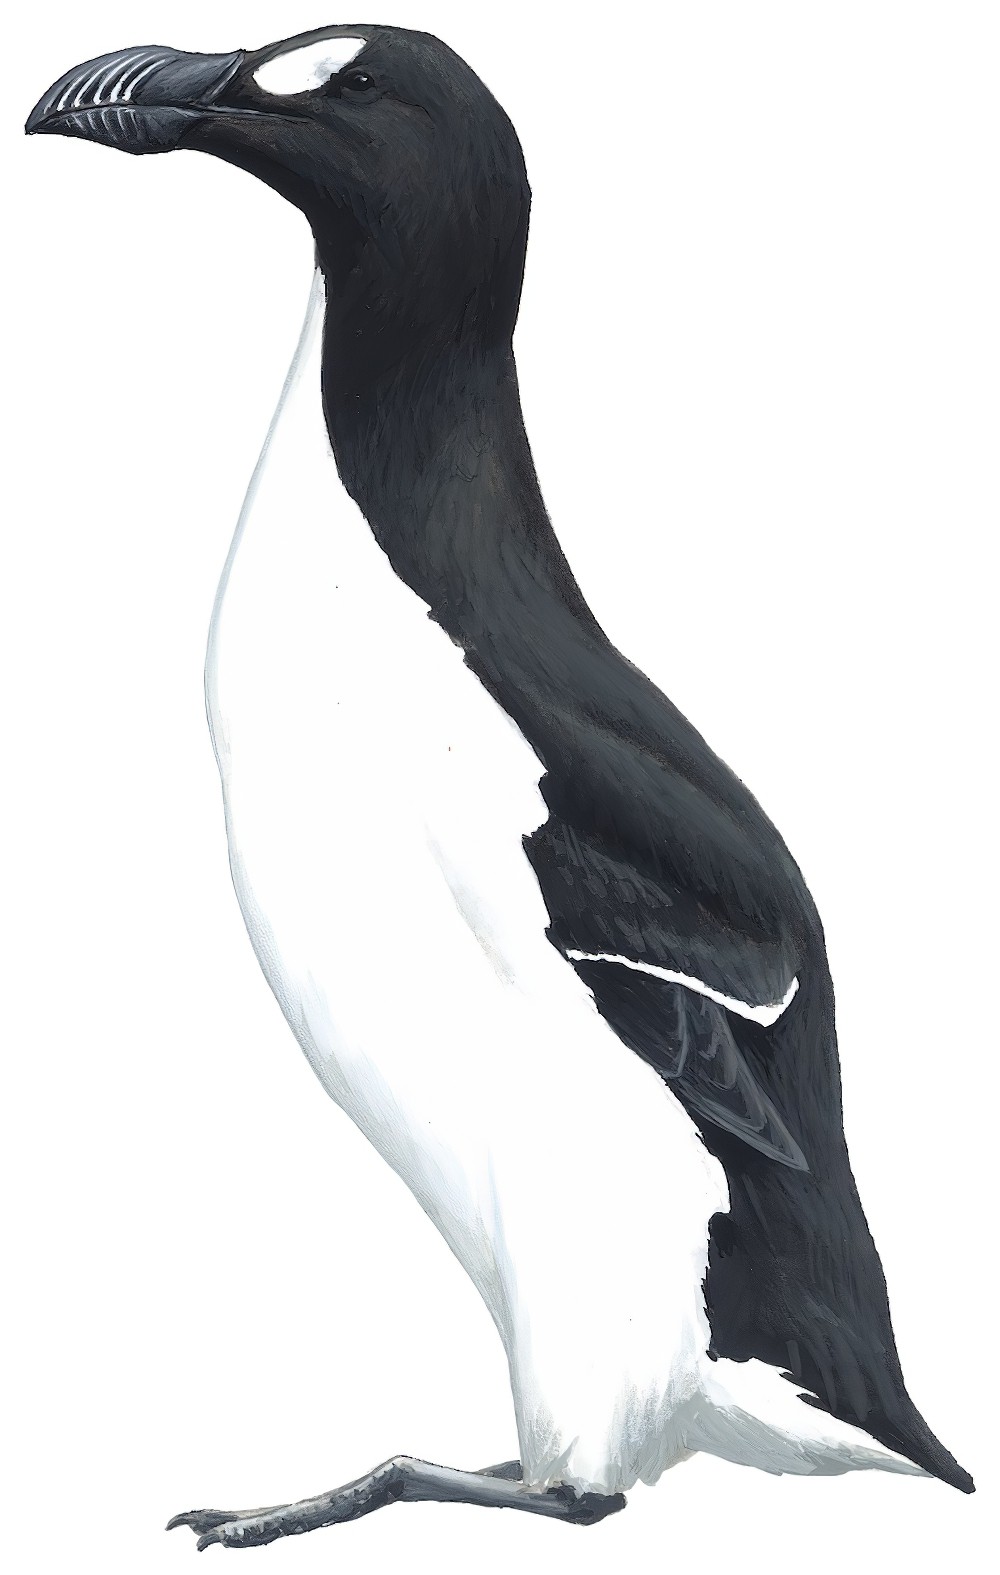 Great Auk / Pinguinus impennis